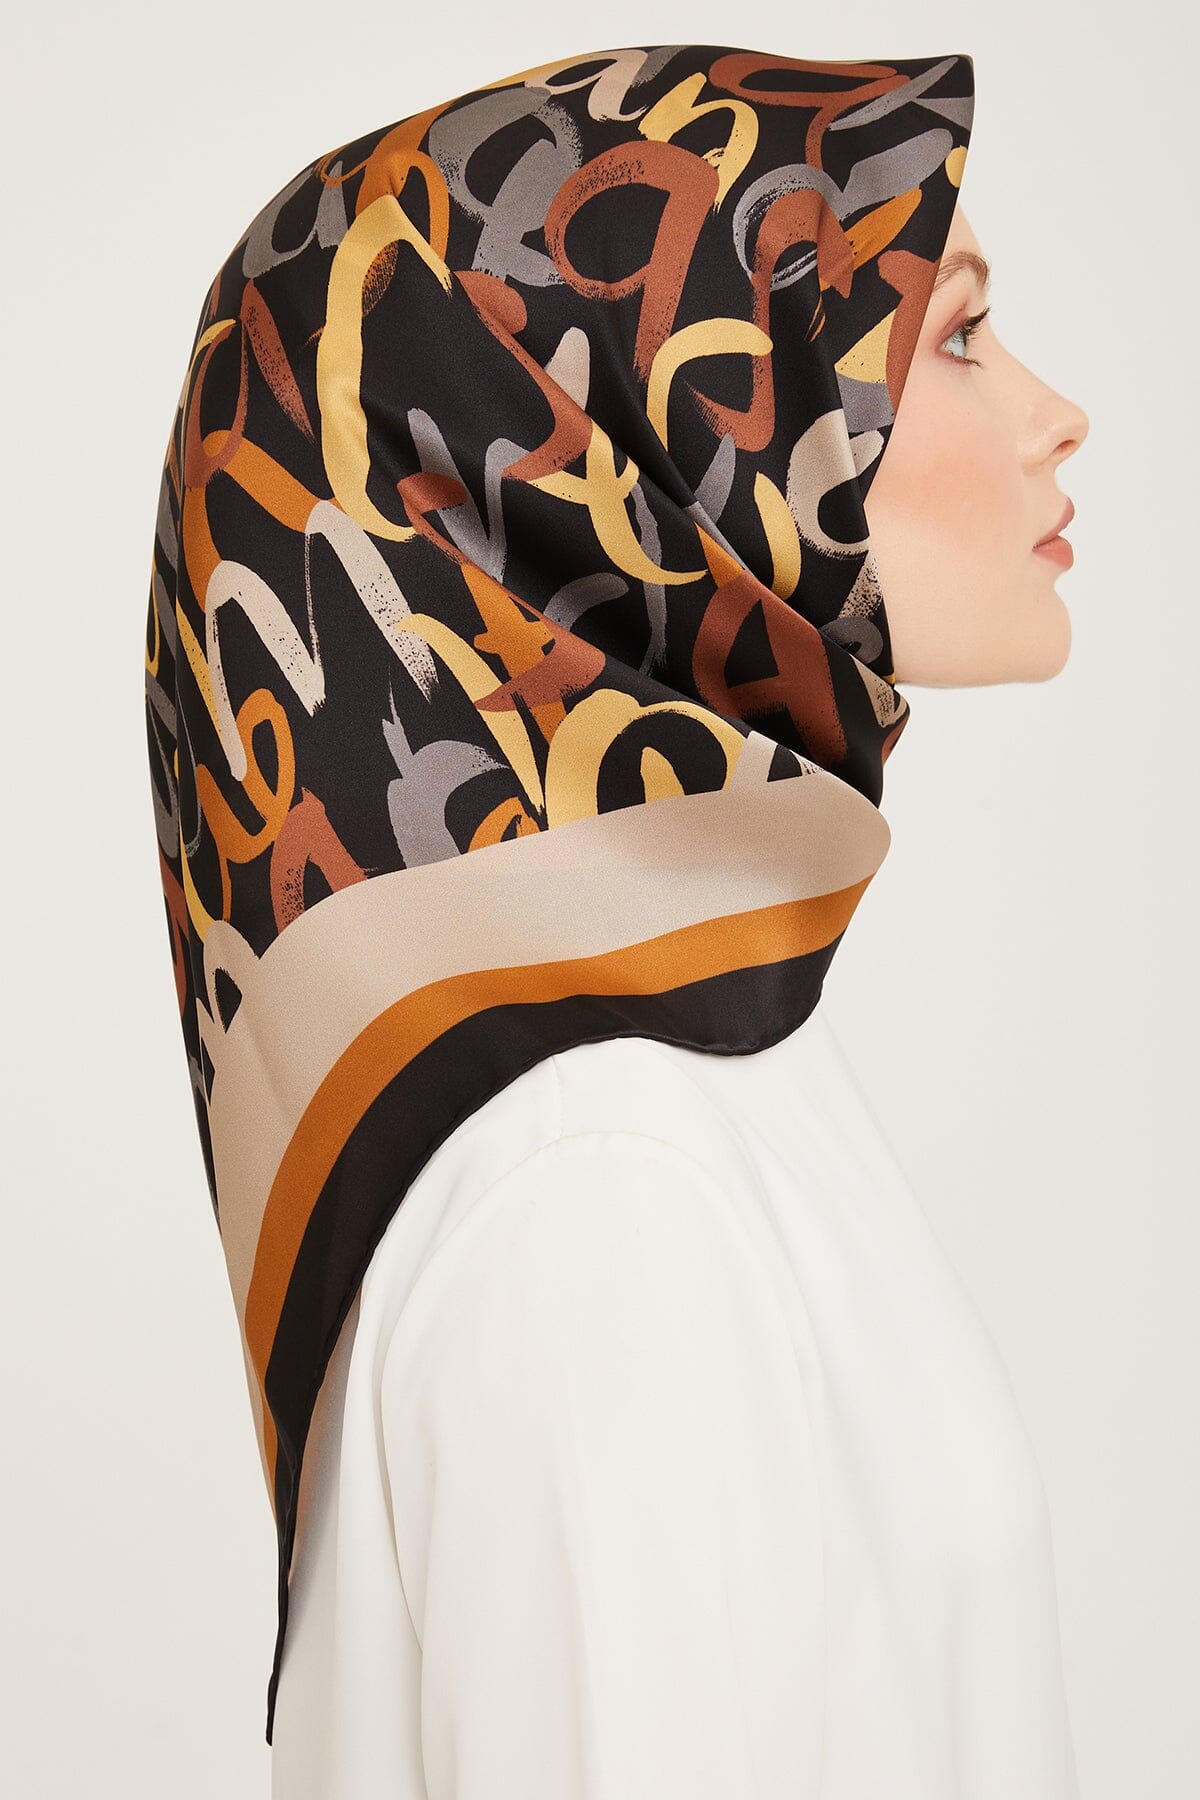 Armine Nudle Designer Silk Scarf #5 Silk Hijabs,Armine Armine 